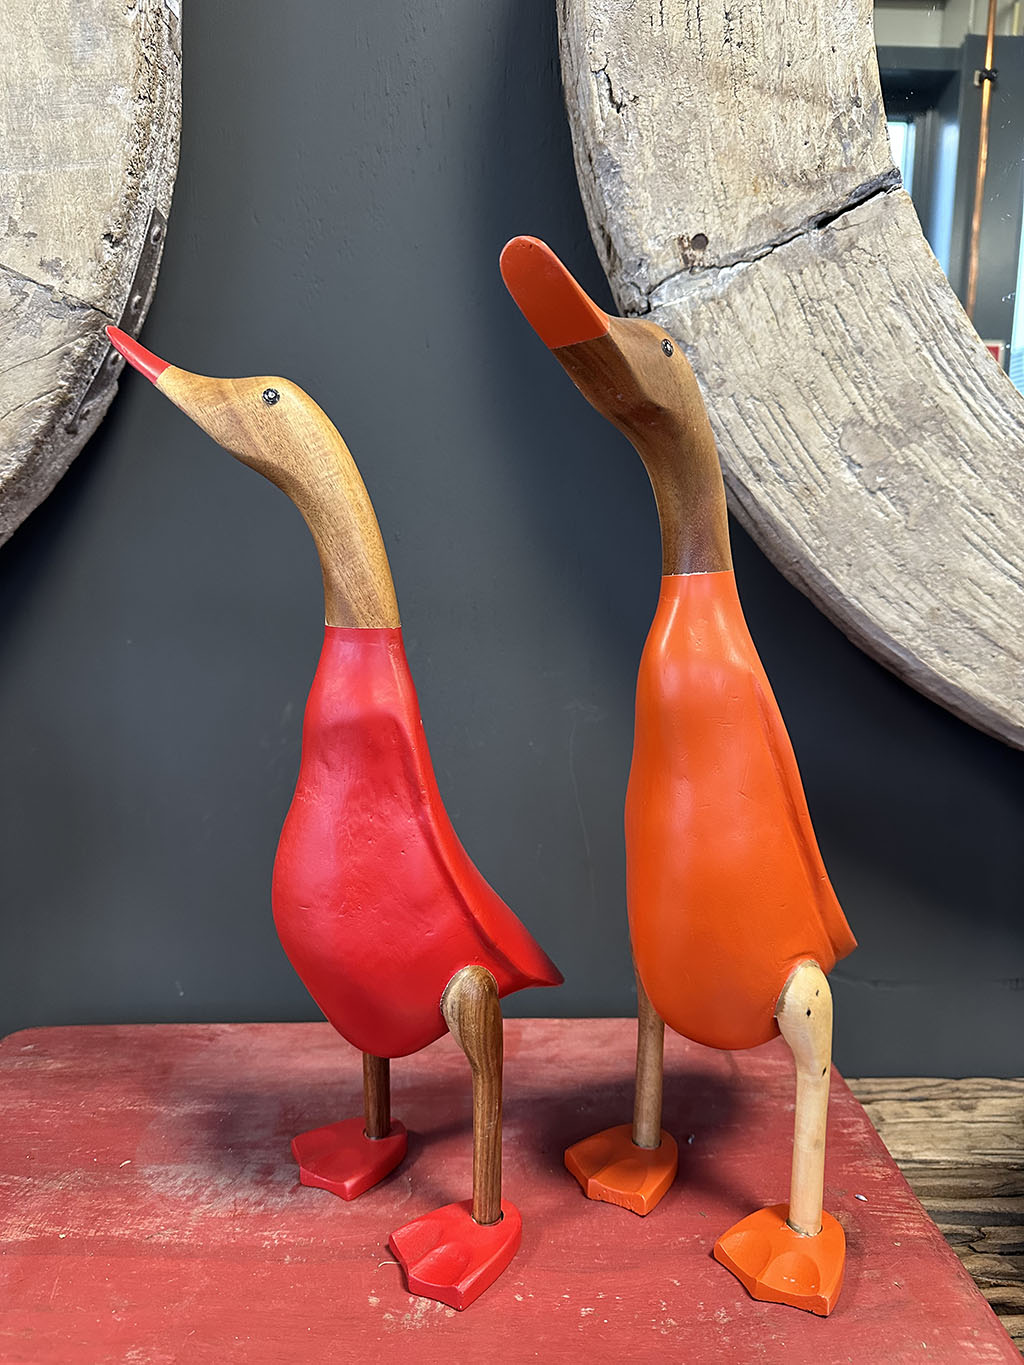 Houten eend in rood en oranje pakje is met de handgemaakt en beschilderd in een rood en oranje pakje, ze zijn stuk voor stuk uniek!